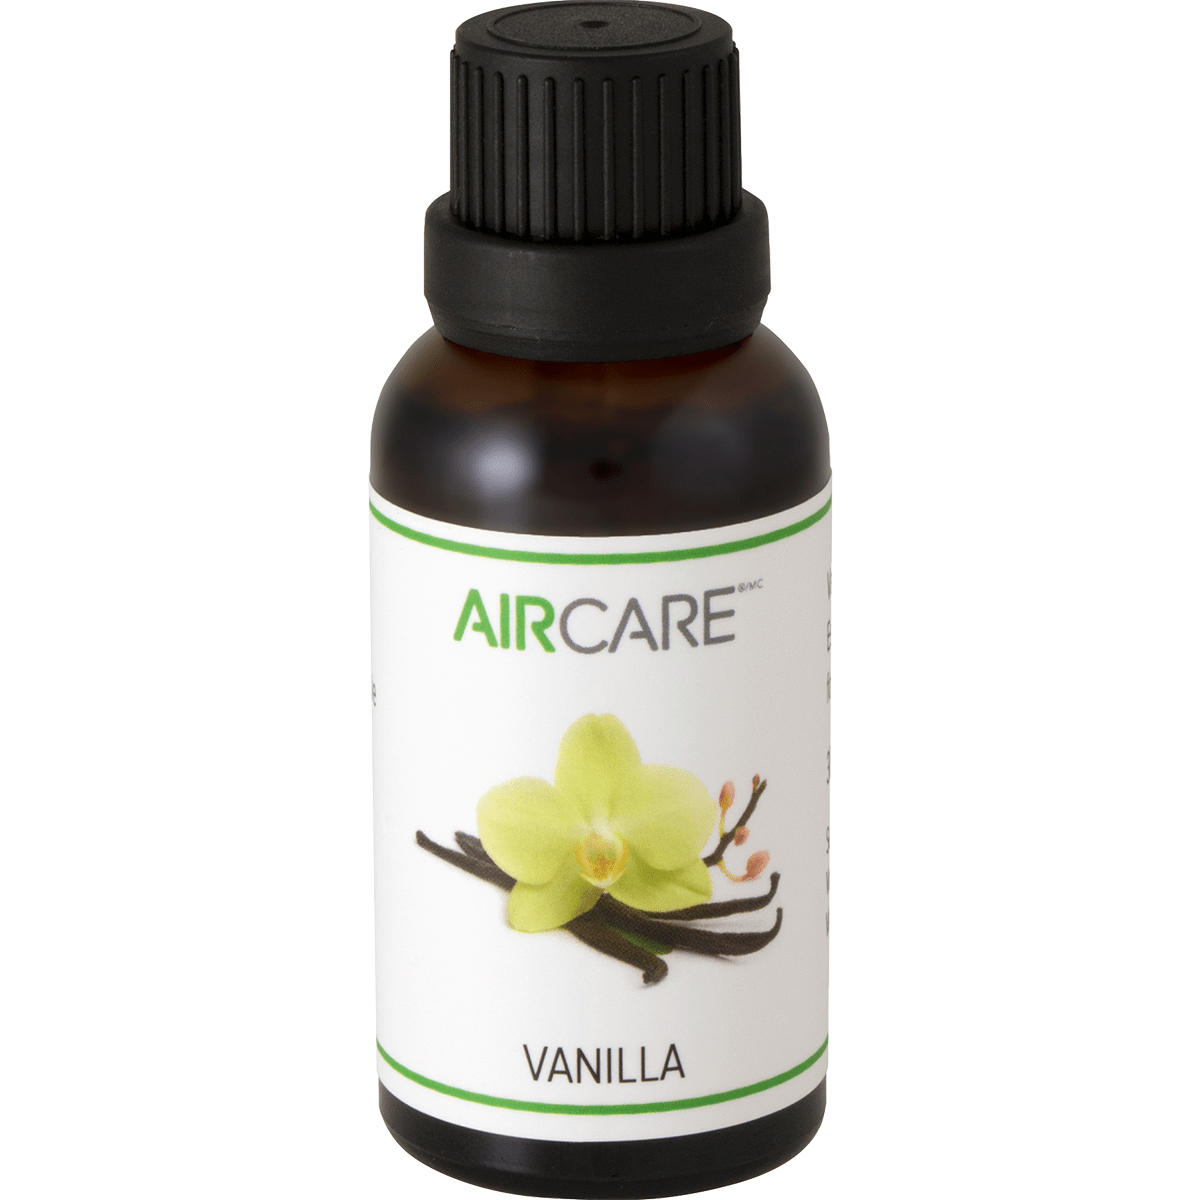 AIRCARE Vanilla Essential Oil